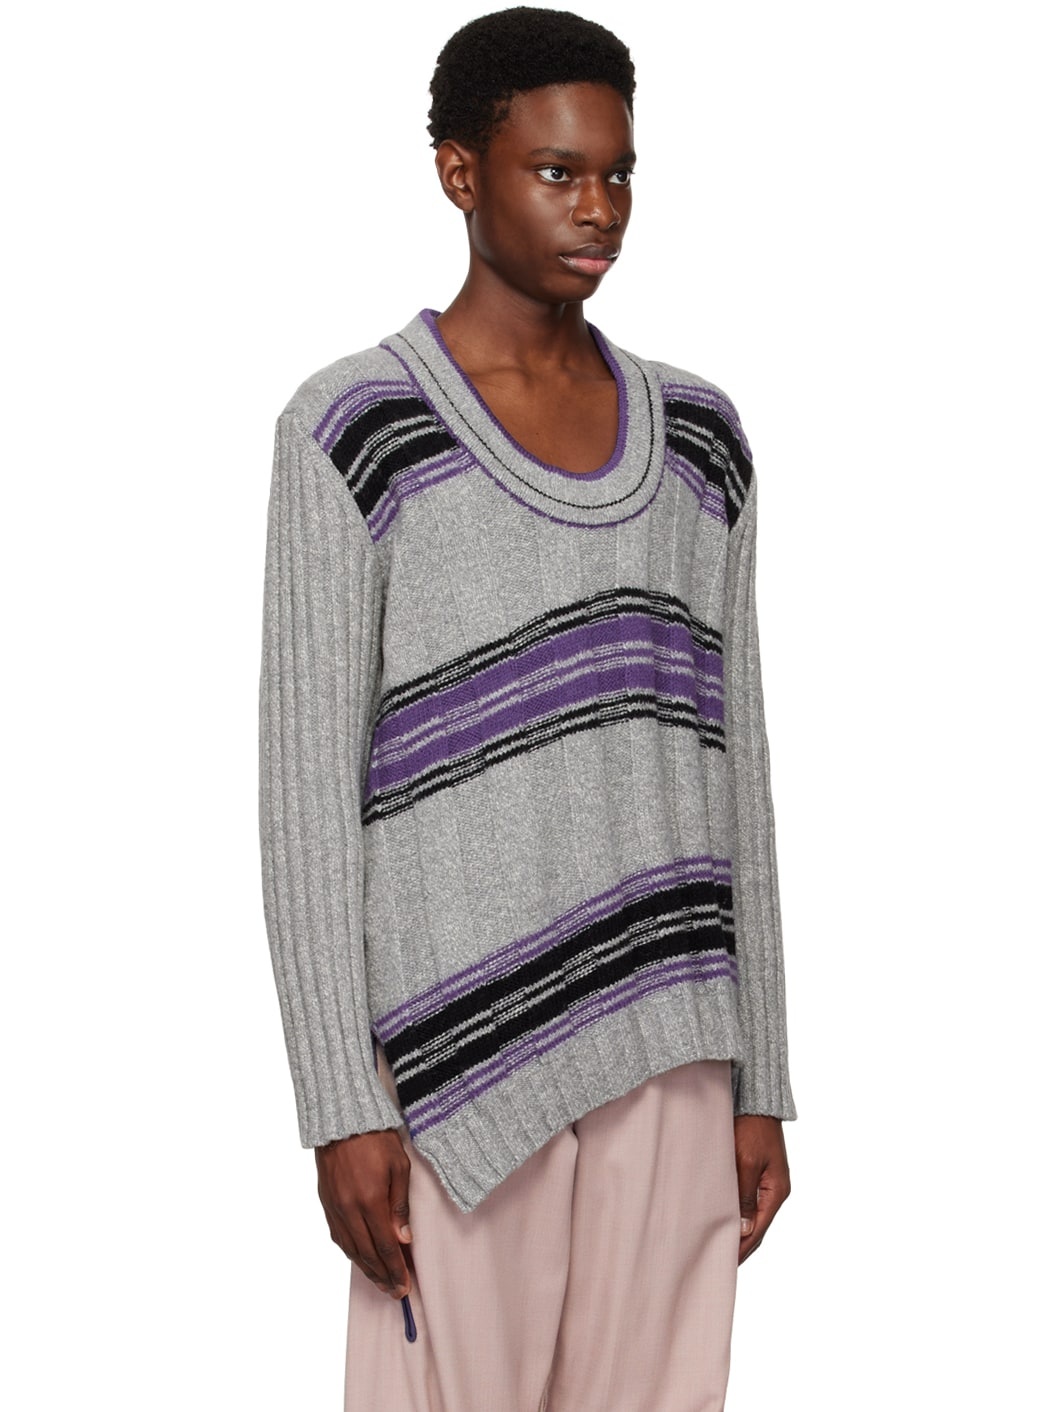 Kiko Kostadinov Gray u0026 Purple Brutus Sweater | REVERSIBLE